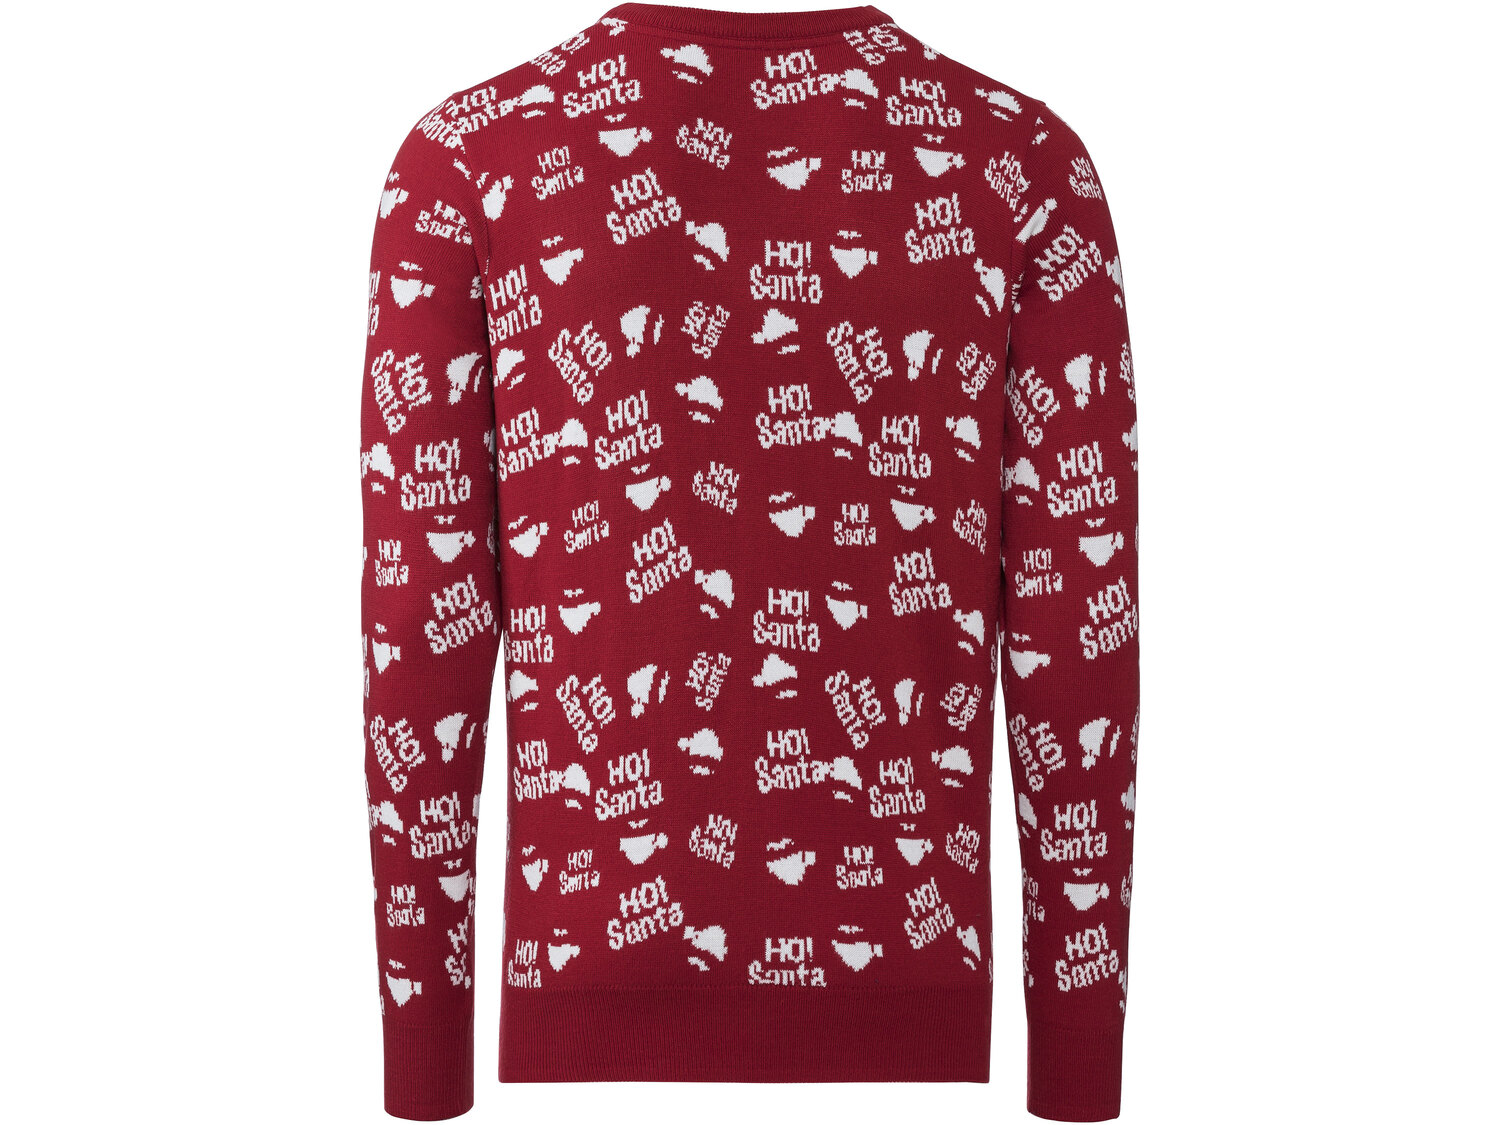 Sweter męski z motywem świątecznym Livergy, cena 39,99 PLN 
- przyjemnie miękki ...